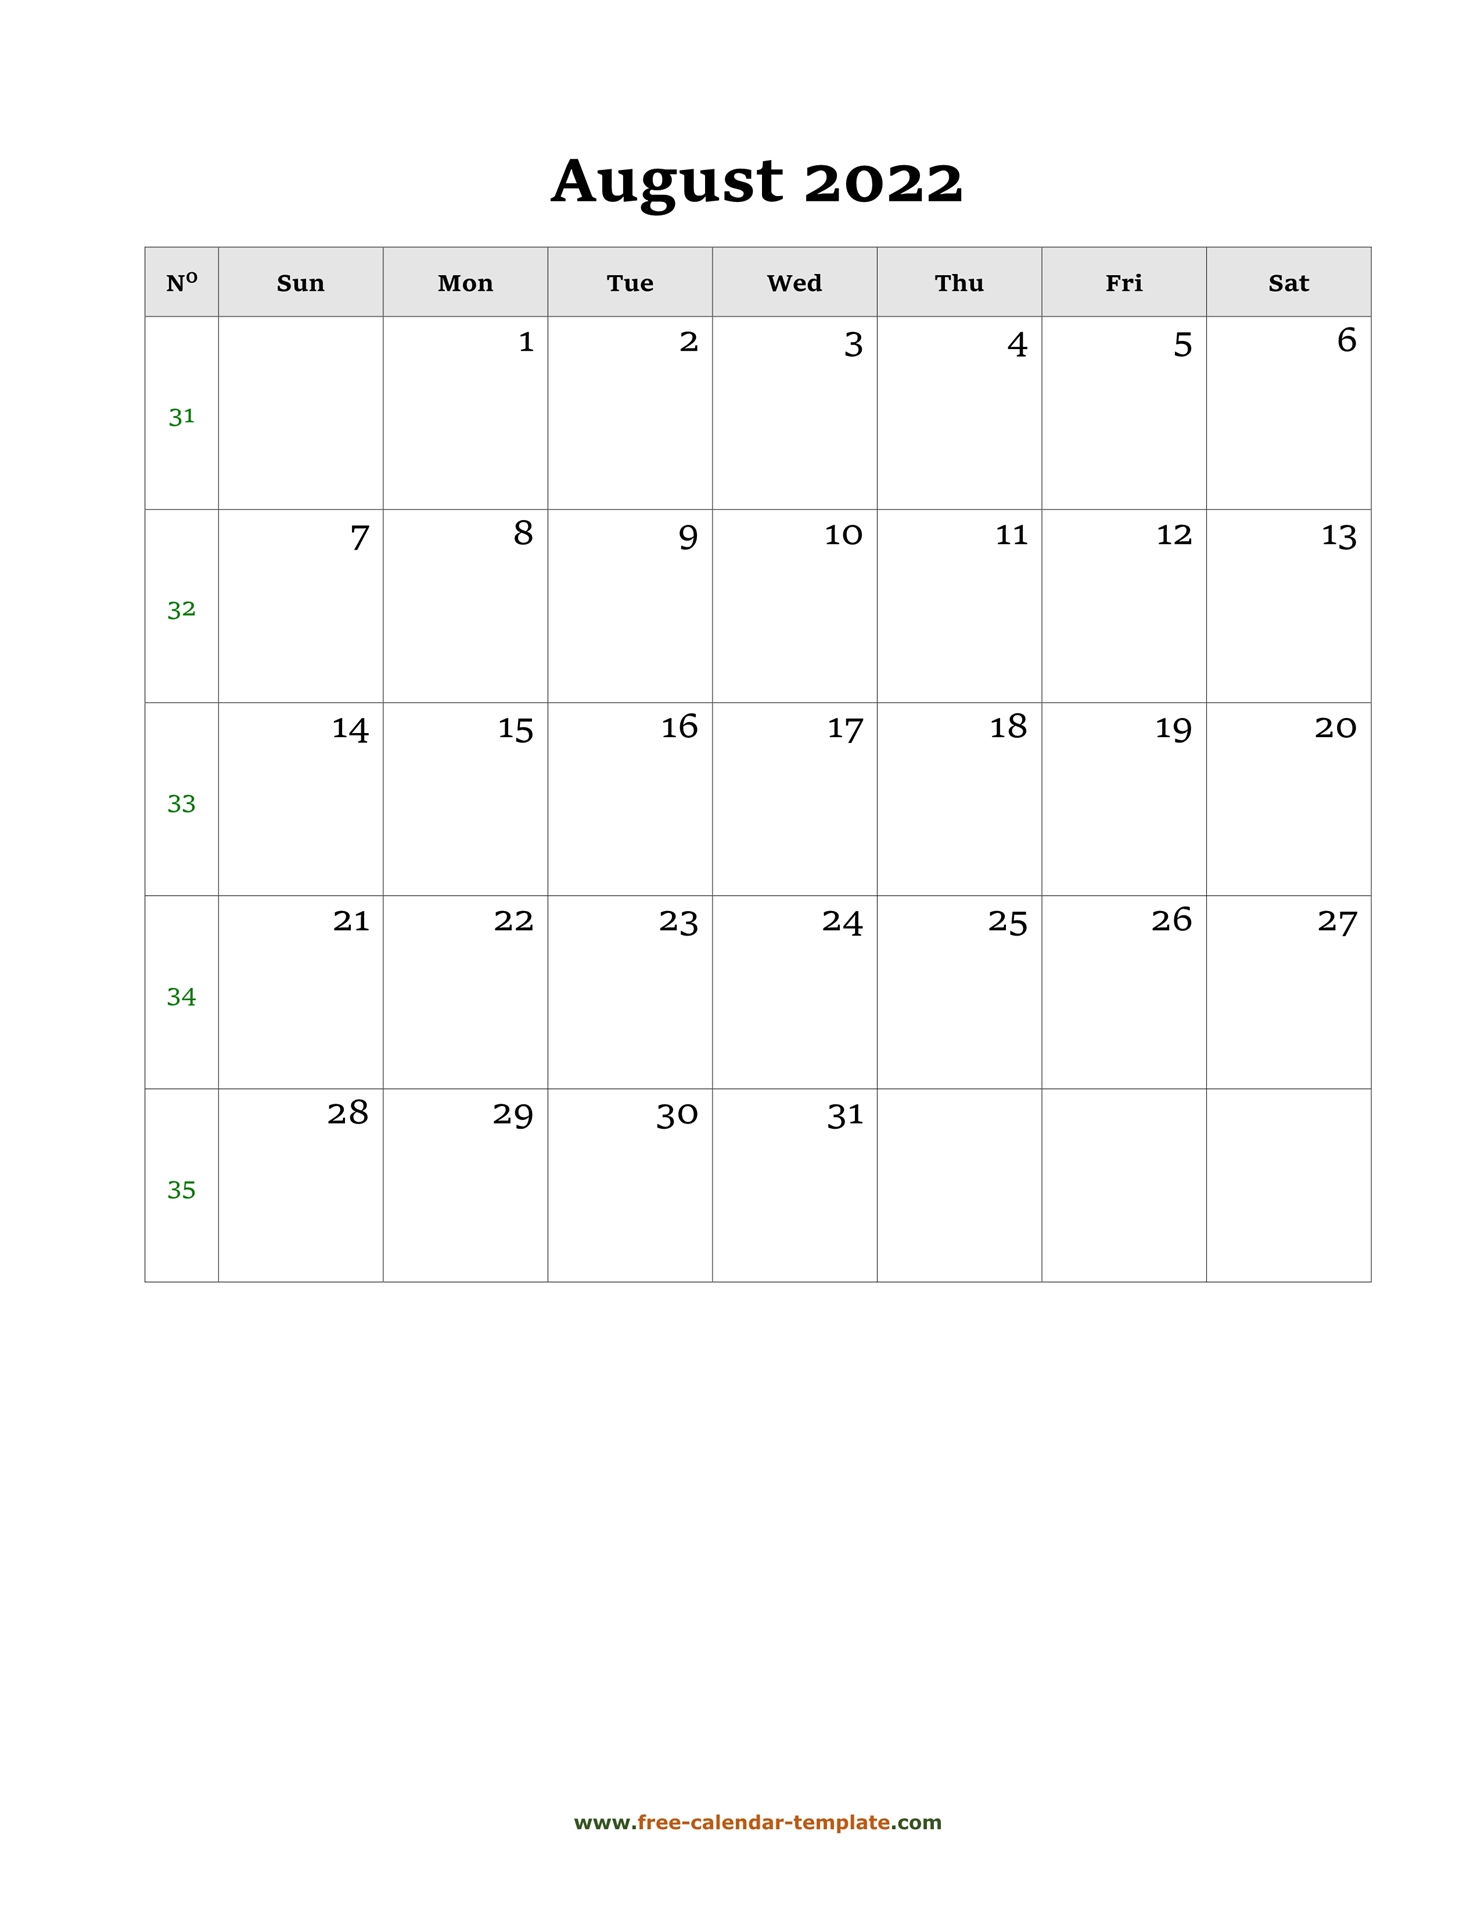 August 2022 Free Calendar Tempplate | Free-Calendar